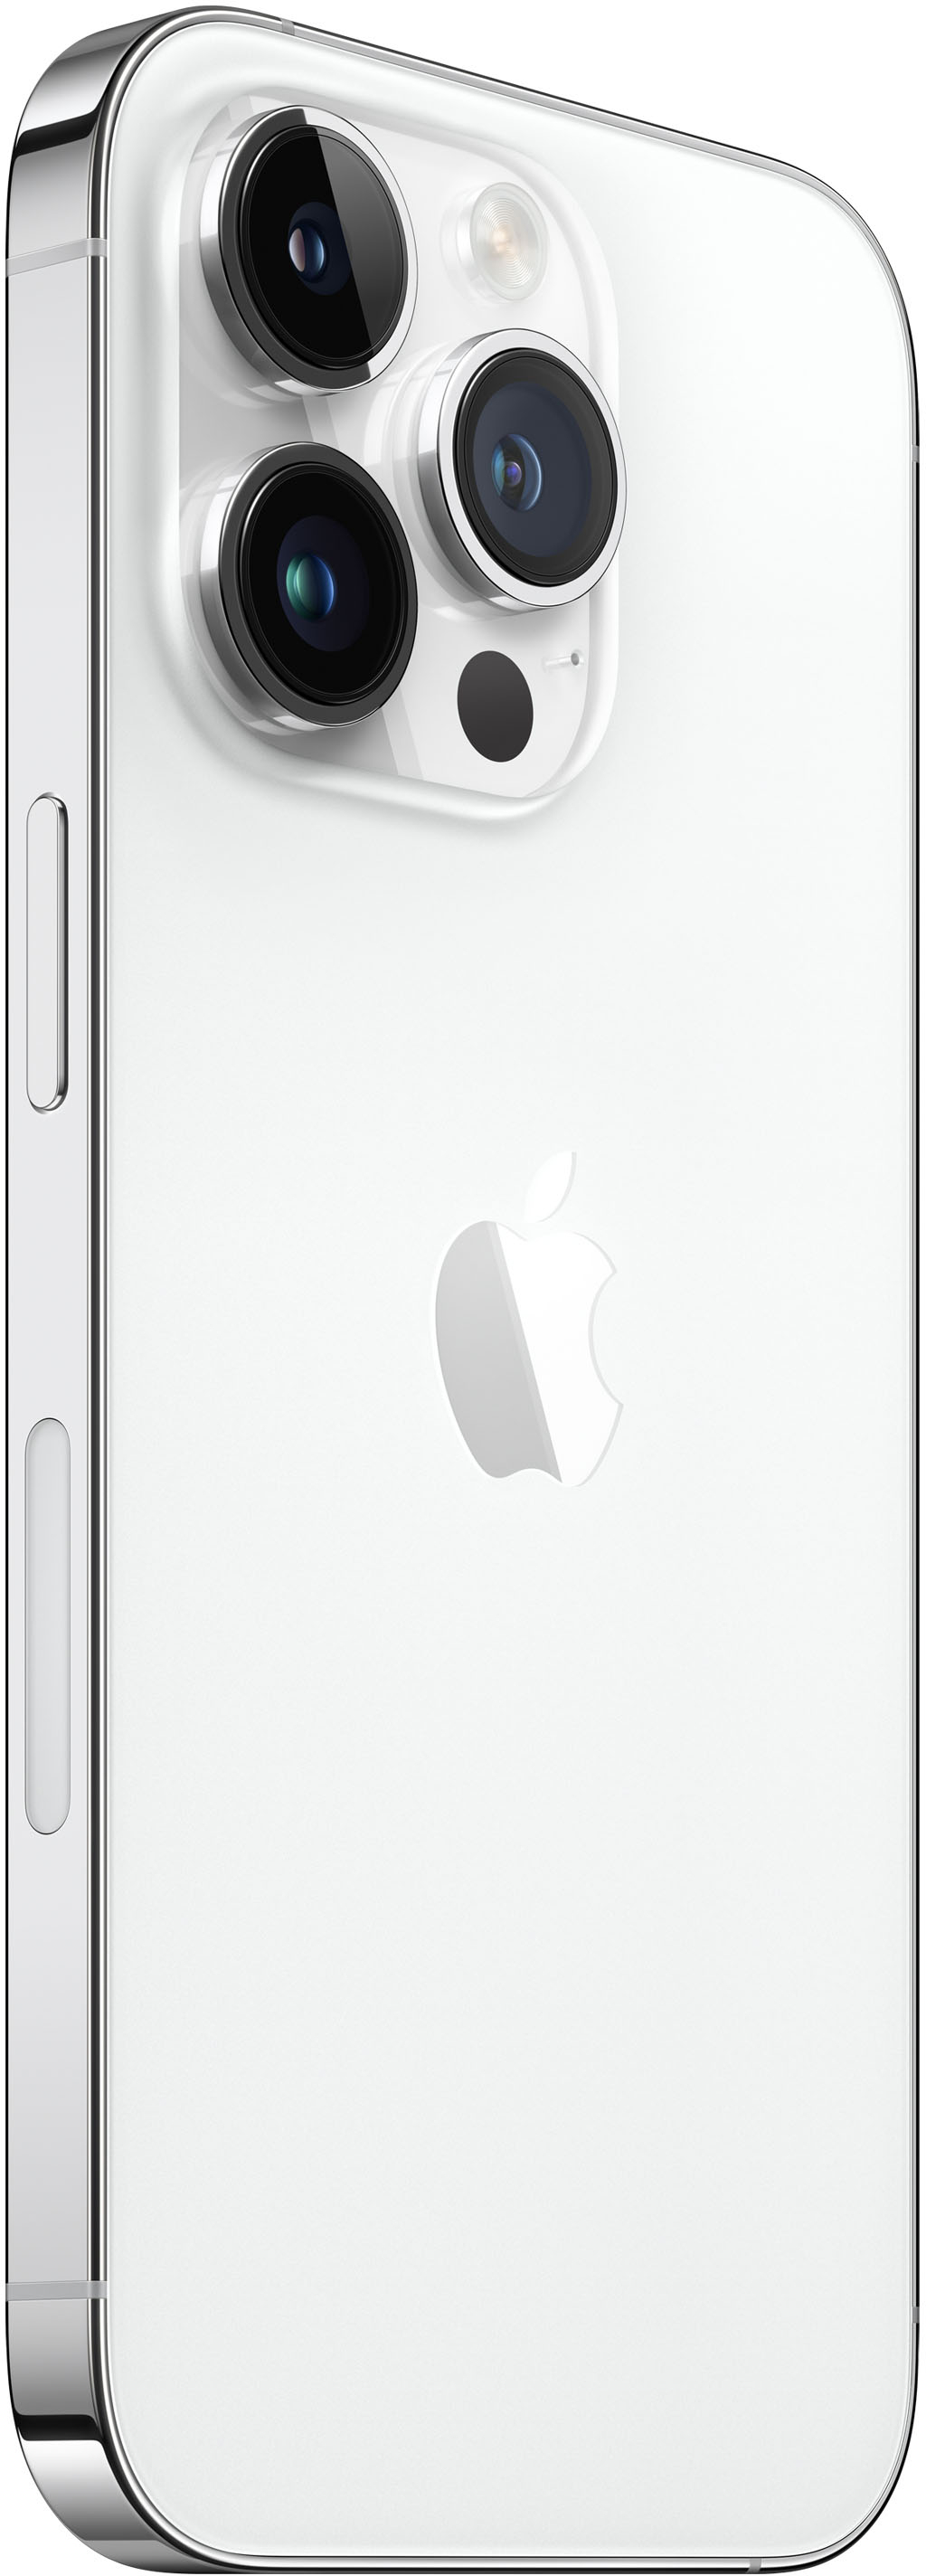 Apple iPhone 14 Pro 512GB Silver (Verizon) MQ1U3LL/A - Best Buy